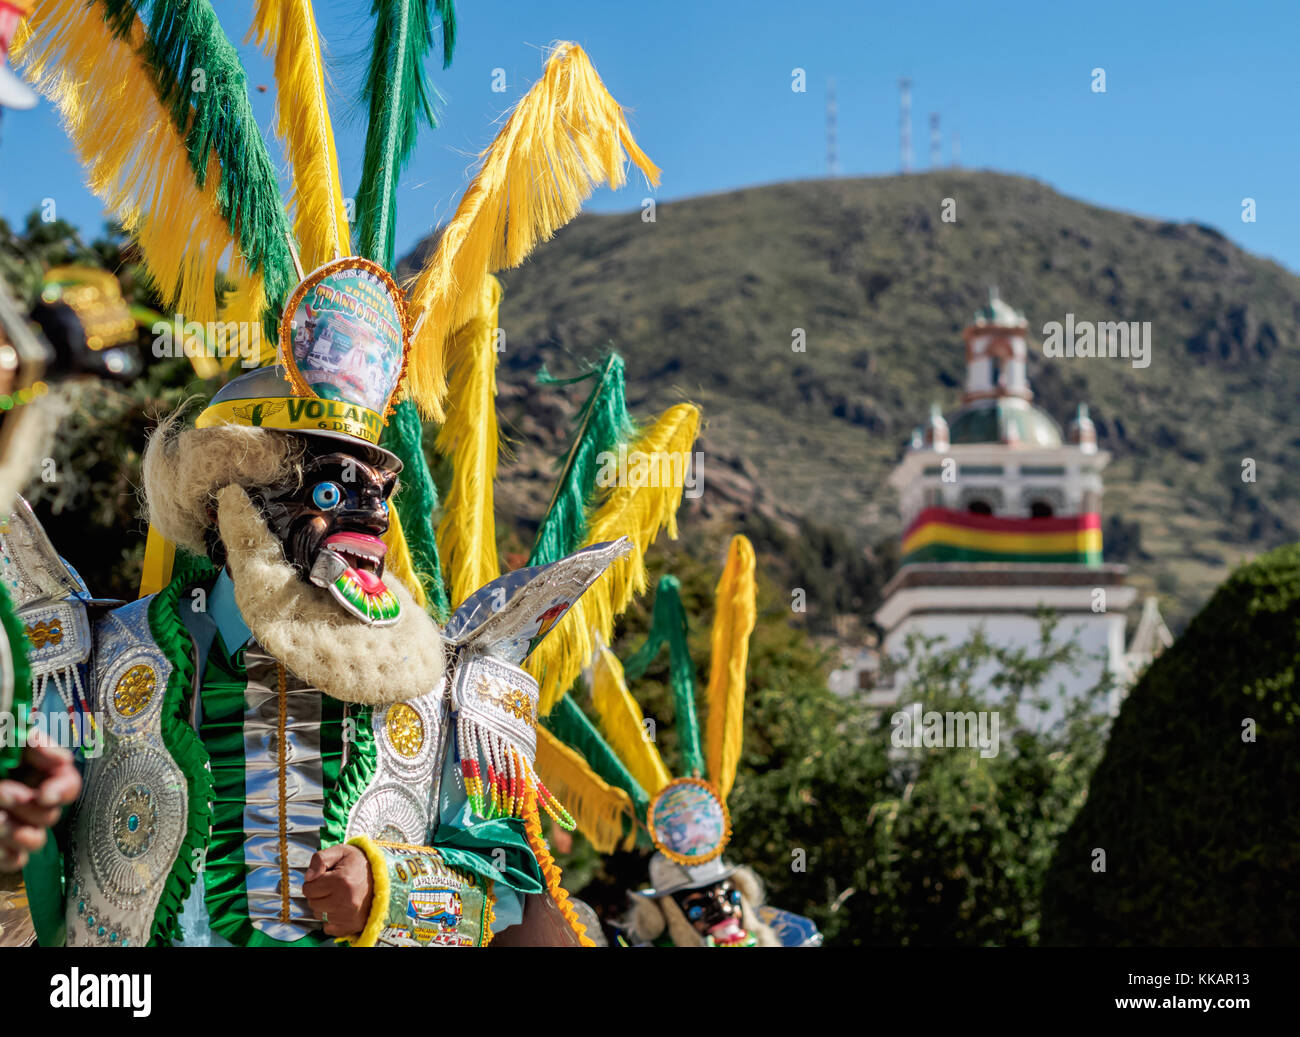 Ballerino mascherato in costume tradizionale, fiesta de la Virgen de la Candelaria, Copacabana, la paz dipartimento, Bolivia, SUD AMERICA Foto Stock